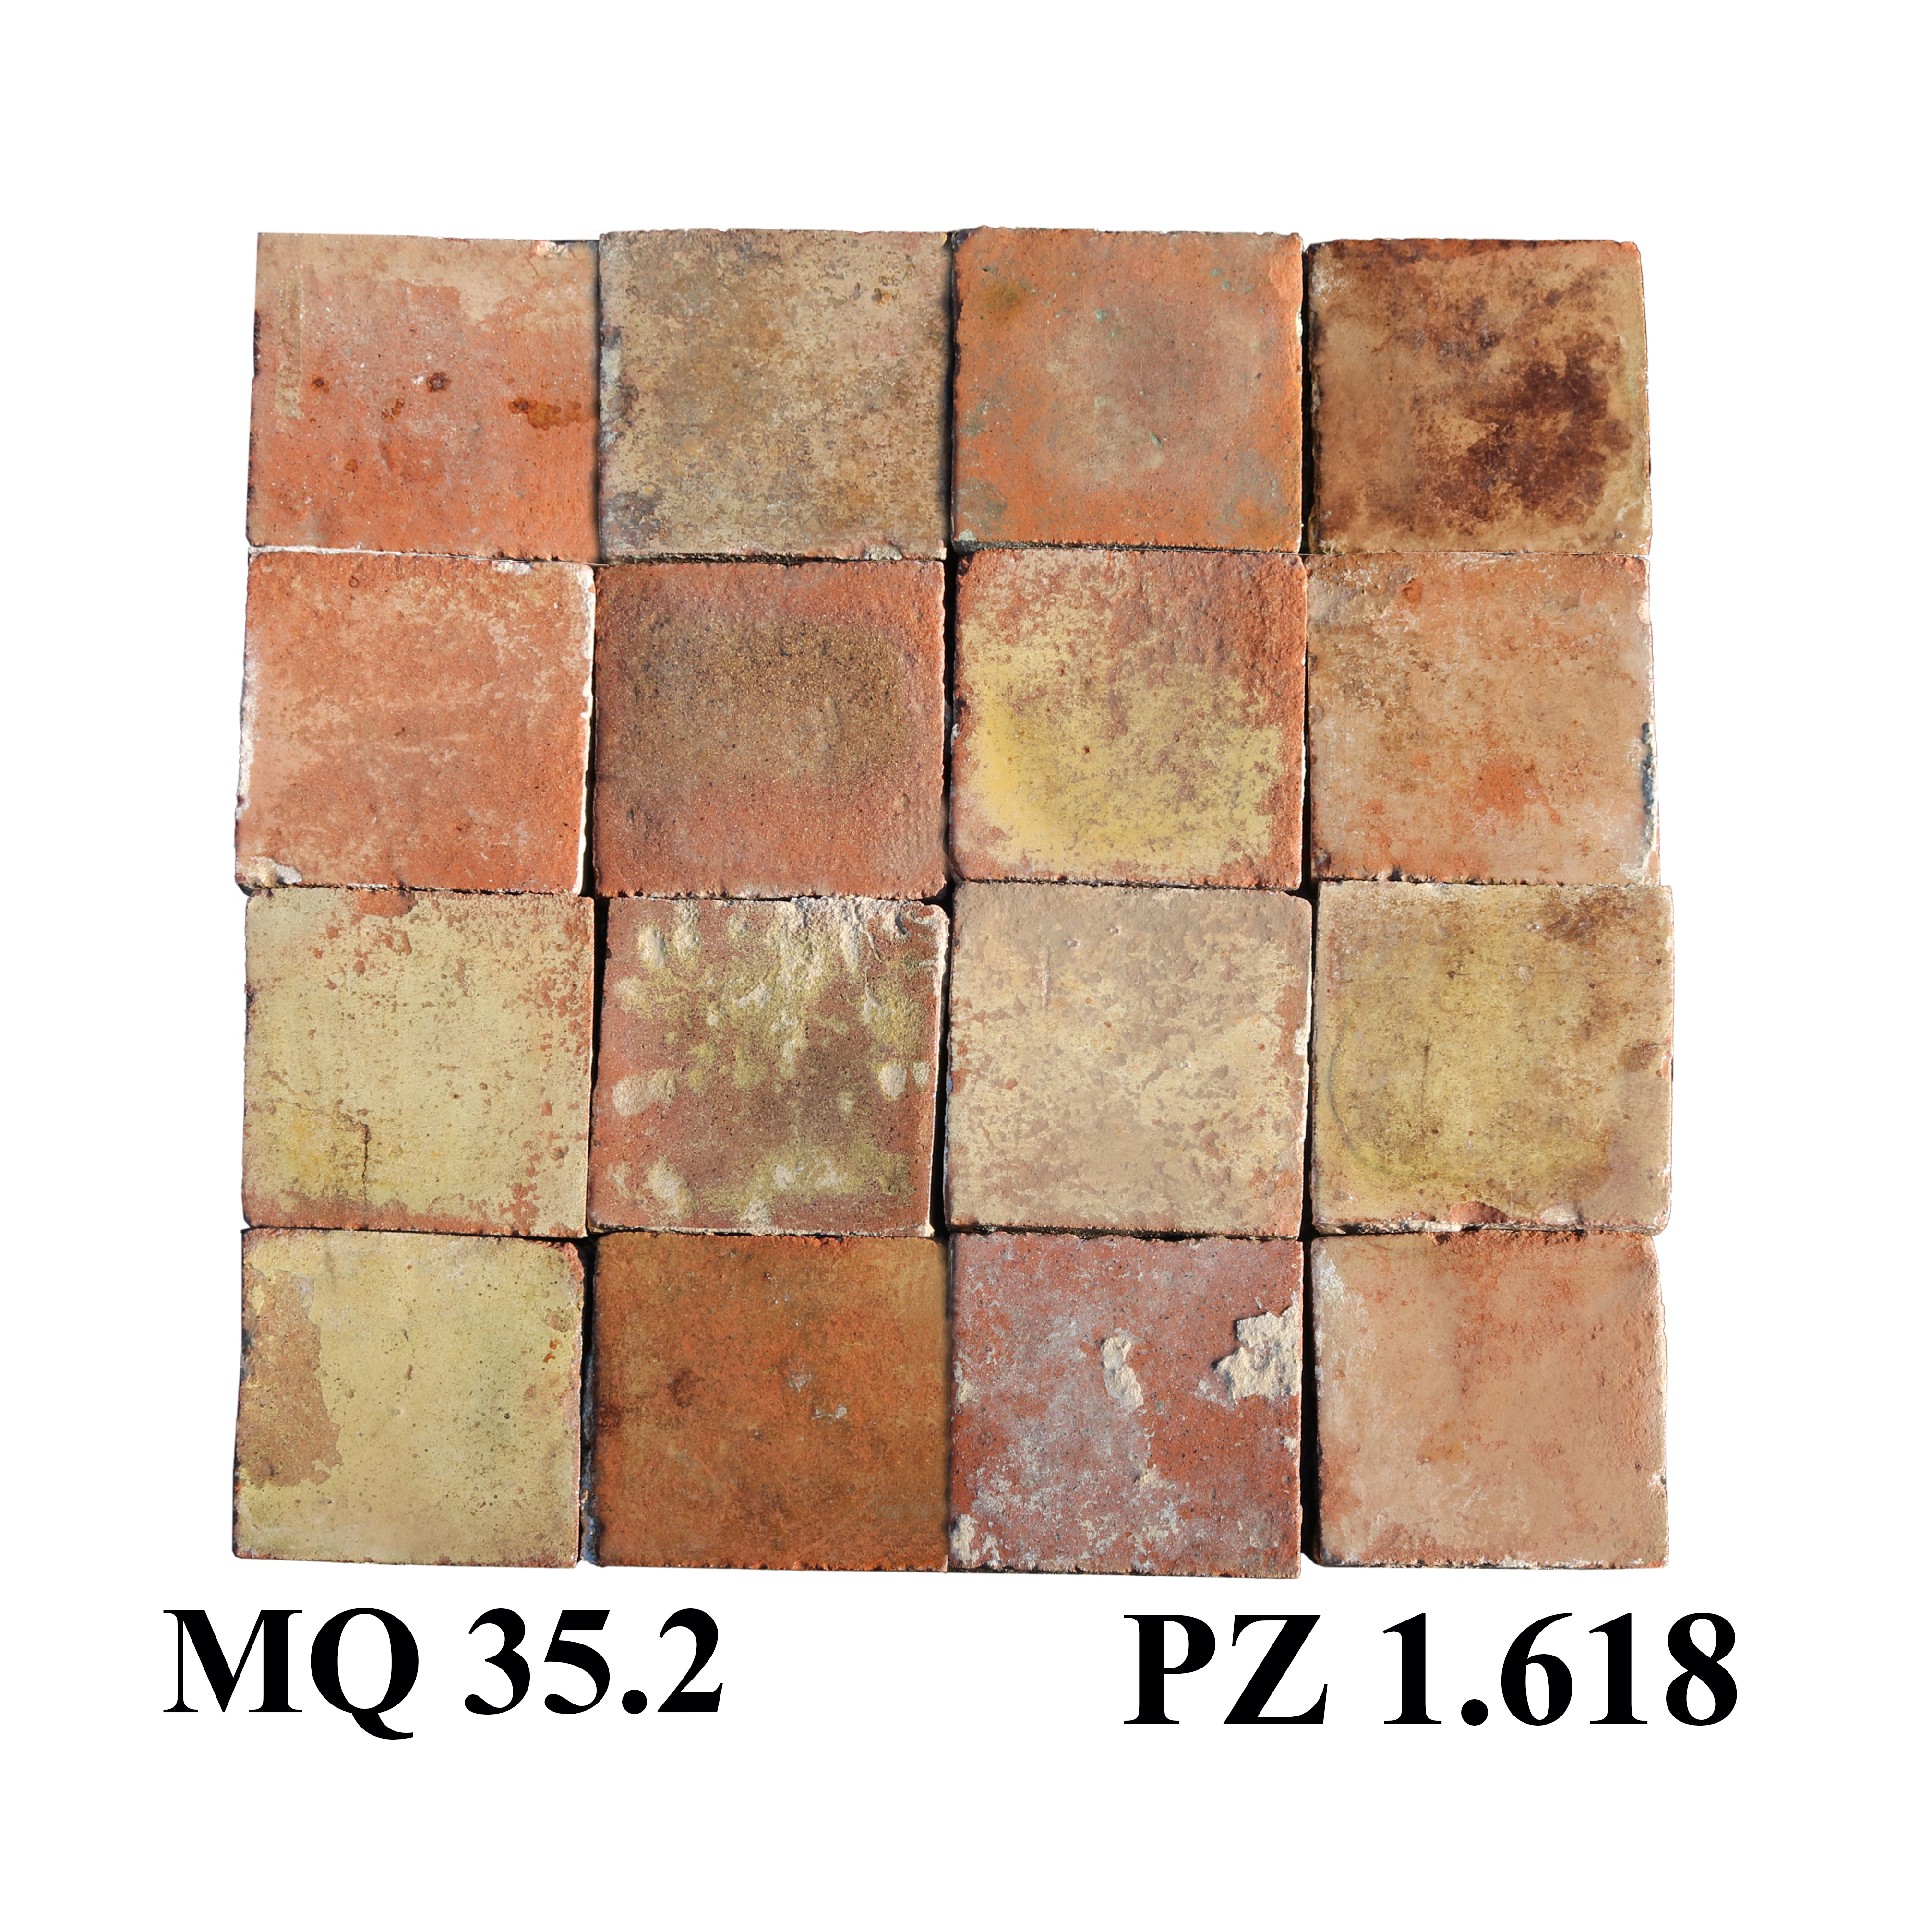 Pavimentazione antica in cotto. cm 14/14.5x14/14.5. - Pavimenti in Cotto - Pavimentazioni Antiche - Prodotti - Antichità Fiorillo